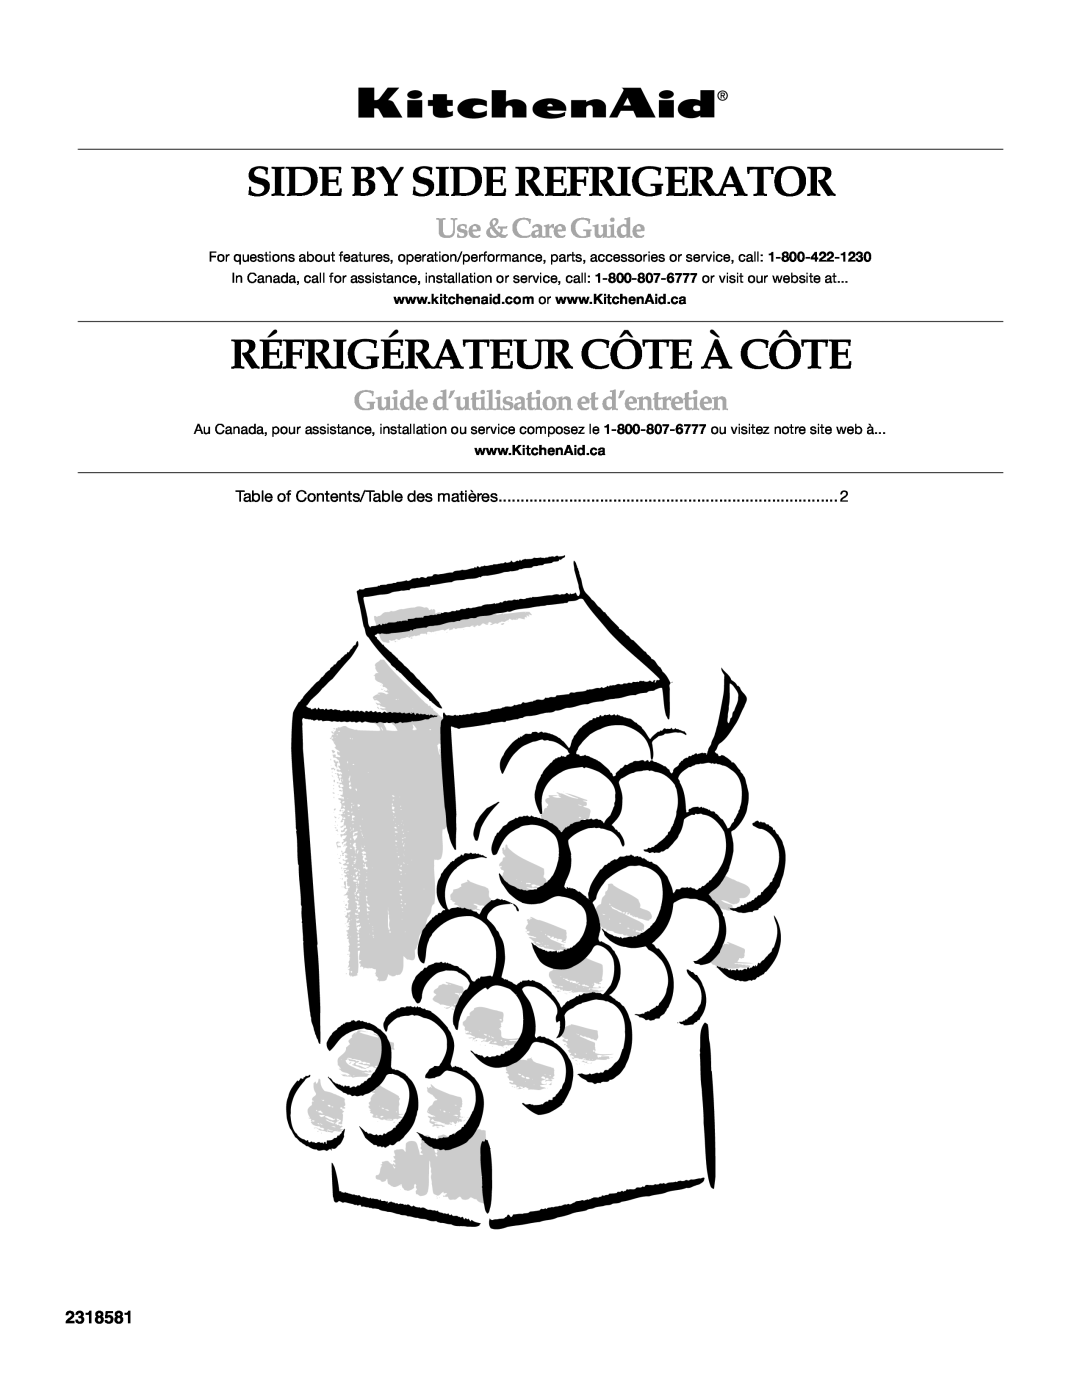 KitchenAid 2318581 manual Side By Side Refrigerator, Réfrigérateur Côte À Côte, Use &CareGuide 